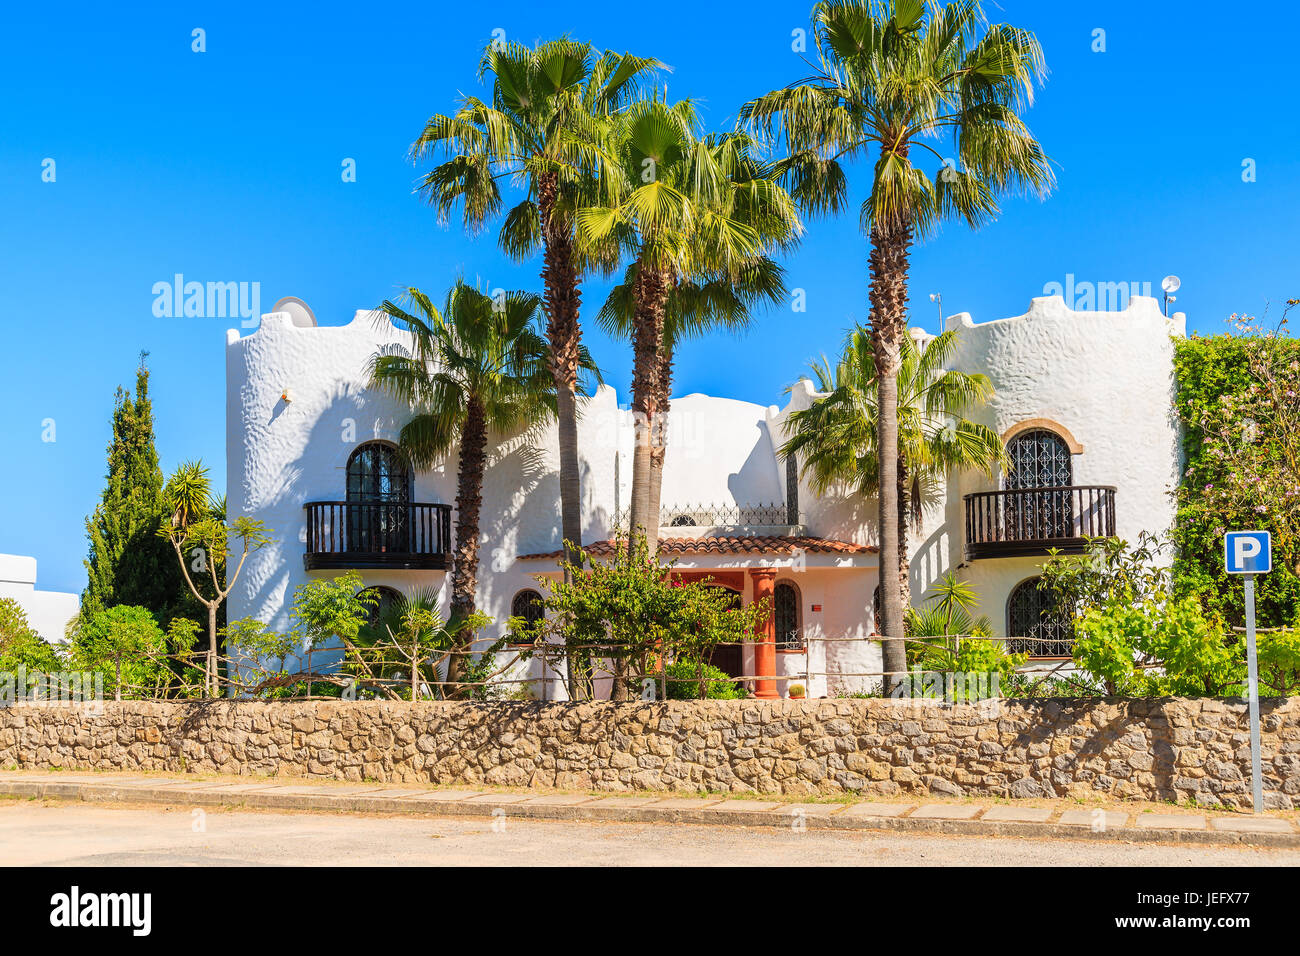 Insel IBIZA, Spanien - 20 Mai 2-17: Luxus-weiße Farbe-Ferien-Villa und hohen Palmen im Garten in Cala Nova Gegend der Insel Ibiza, Spanien. Stockfoto